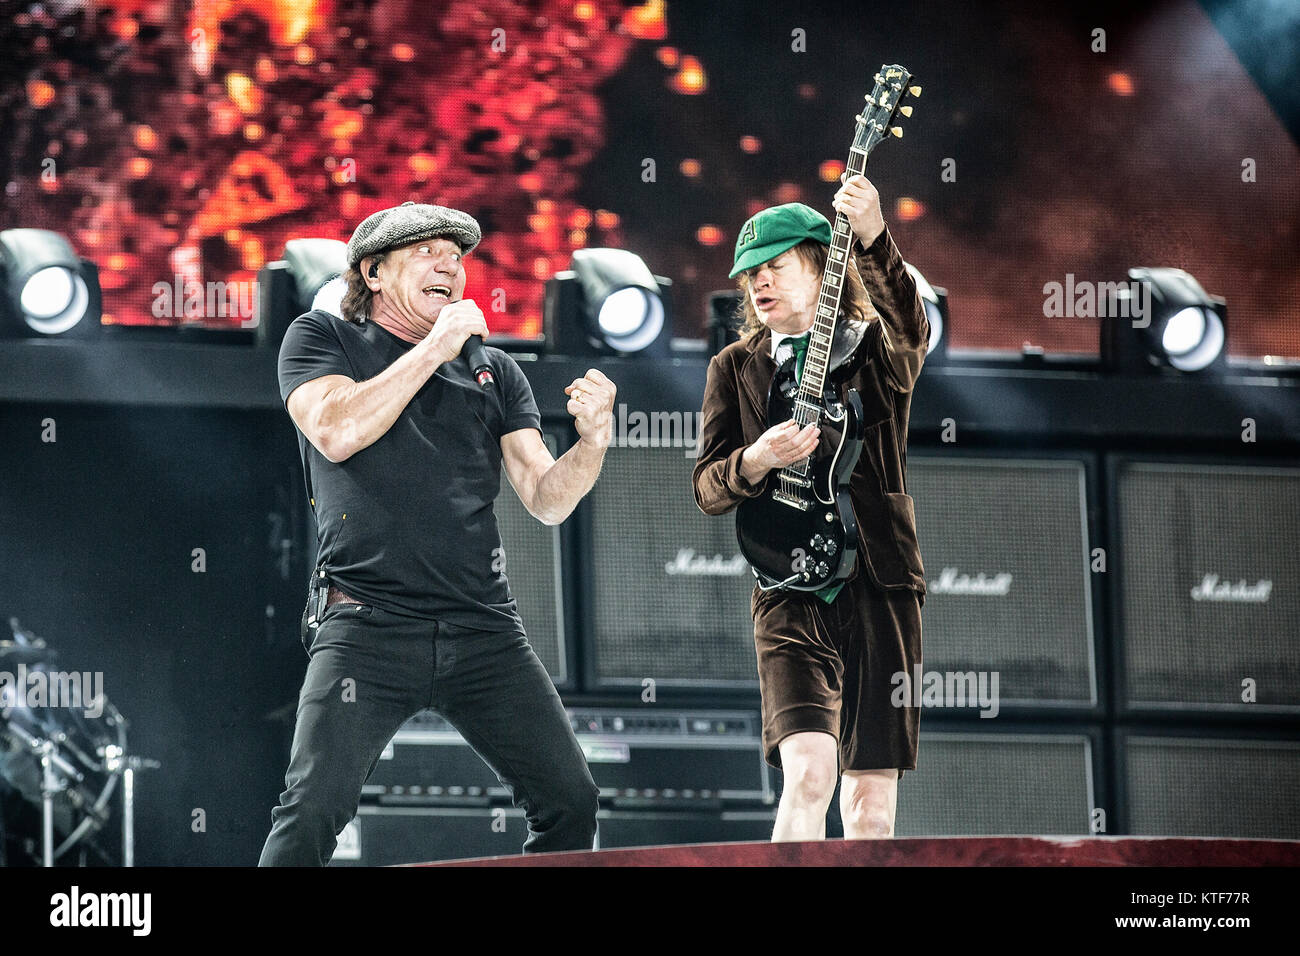 La Australian rock band AC/DC esegue un concerto dal vivo a valle Hovin Stadion di Oslo come parte della roccia o busto World Tour 2015. Qui il cantante e il chitarrista Angus Young (R) è visto dal vivo sul palco con vokalist Brian Johnson (L). Norvegia, 17/07 2015. Foto Stock